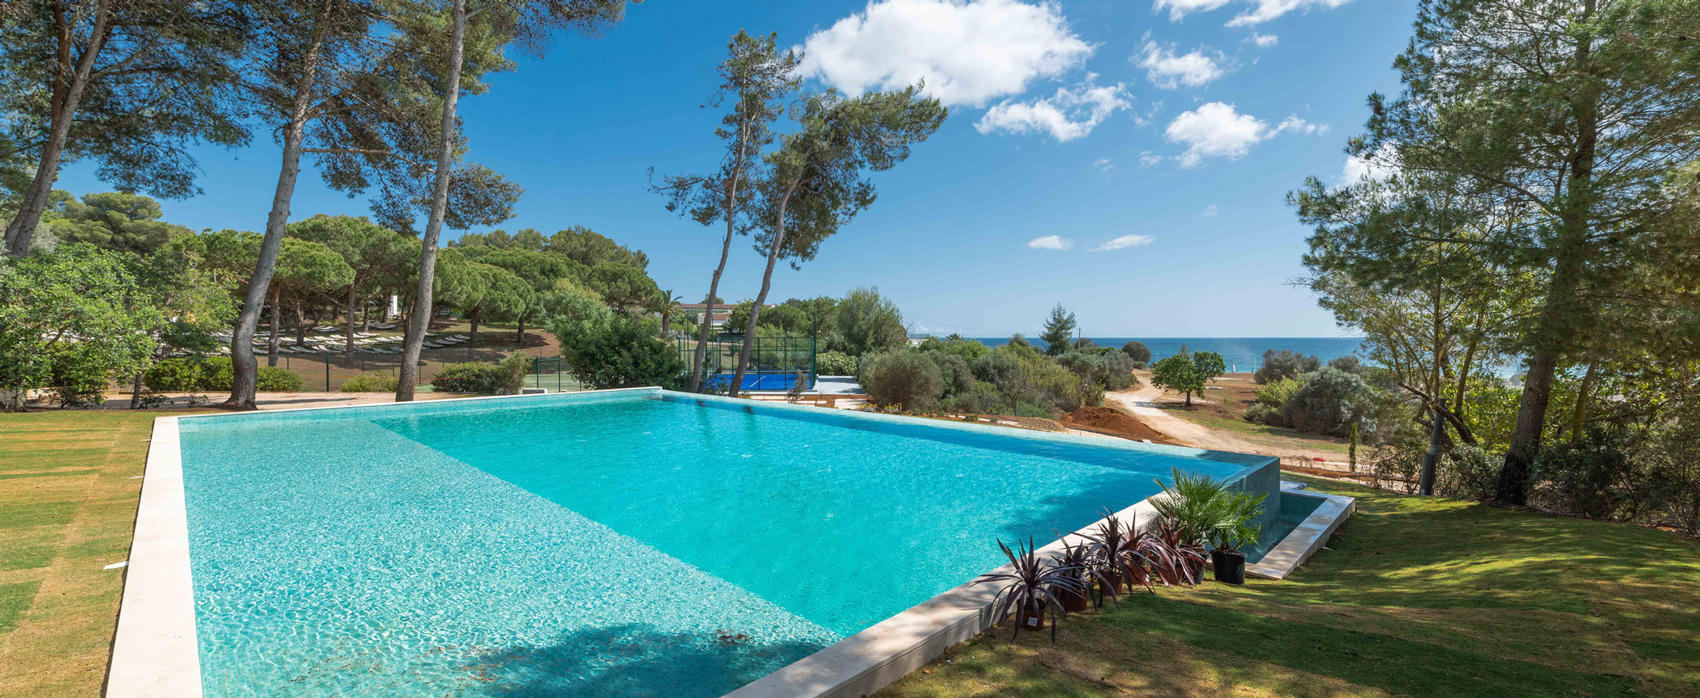 Pestana Blue Alvor Beach All Inclusive Hotel - Algarve